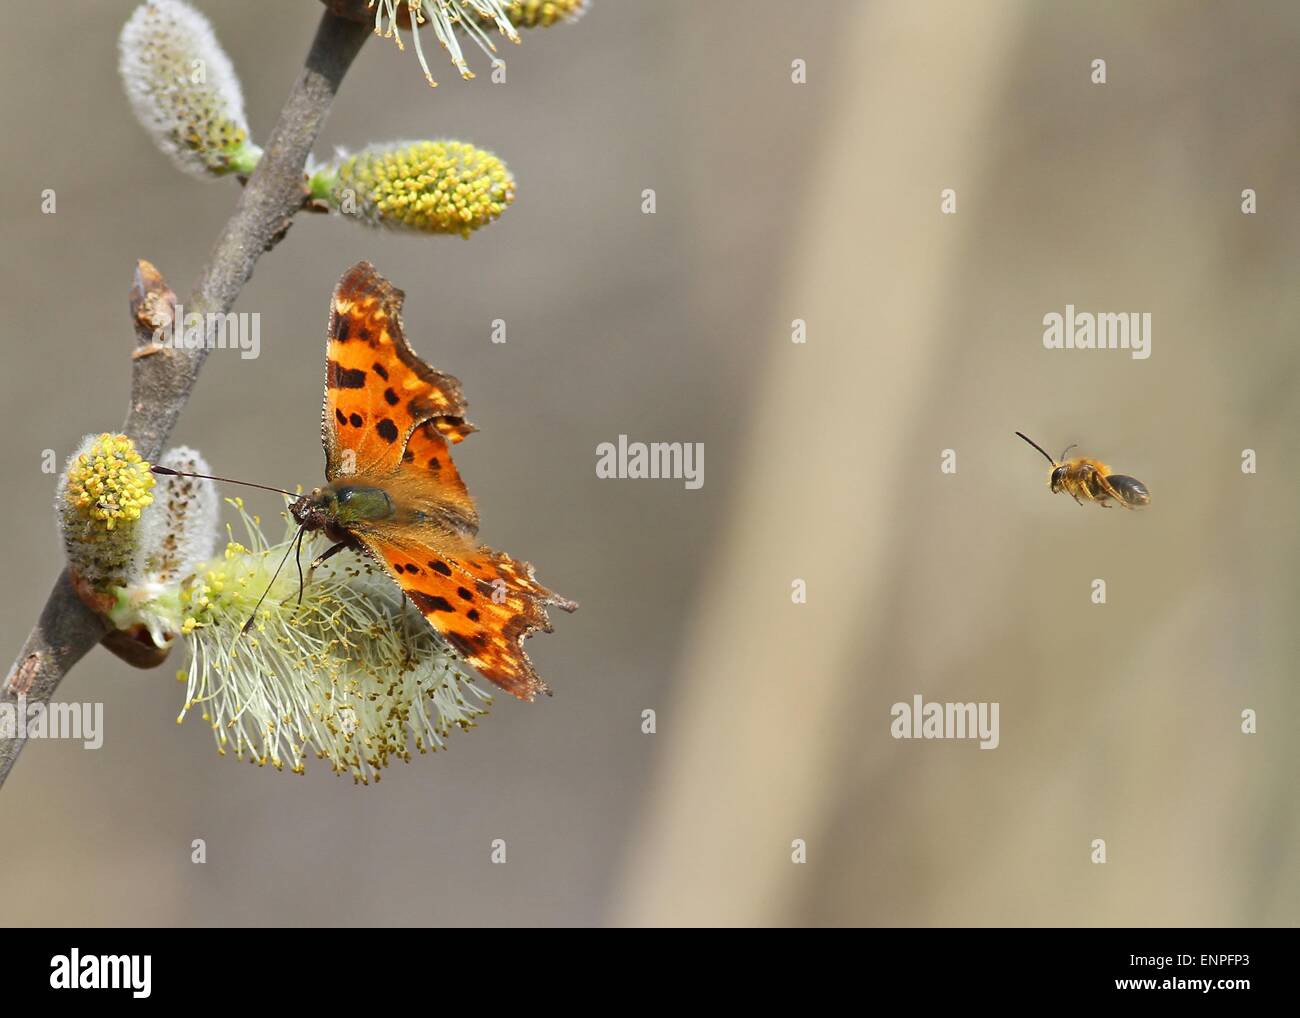 Zumbido de abeja una mariposa sobre un fondo claro con espacio para texto Foto de stock